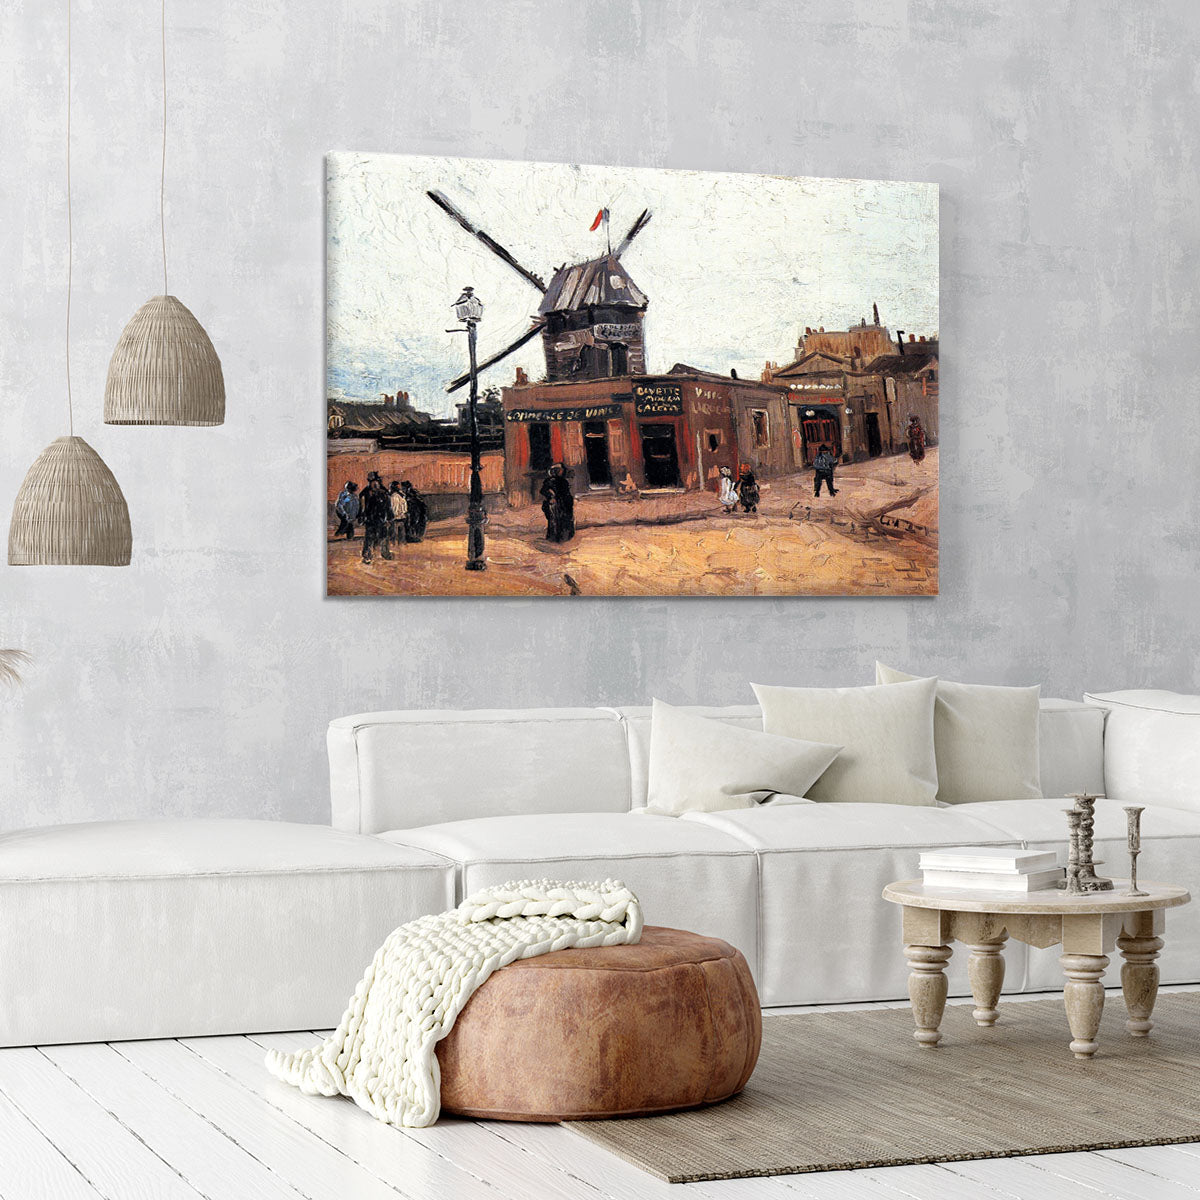 Le Moulin de la Galette 3 by Van Gogh Canvas Print or Poster - Canvas Art Rocks - 6